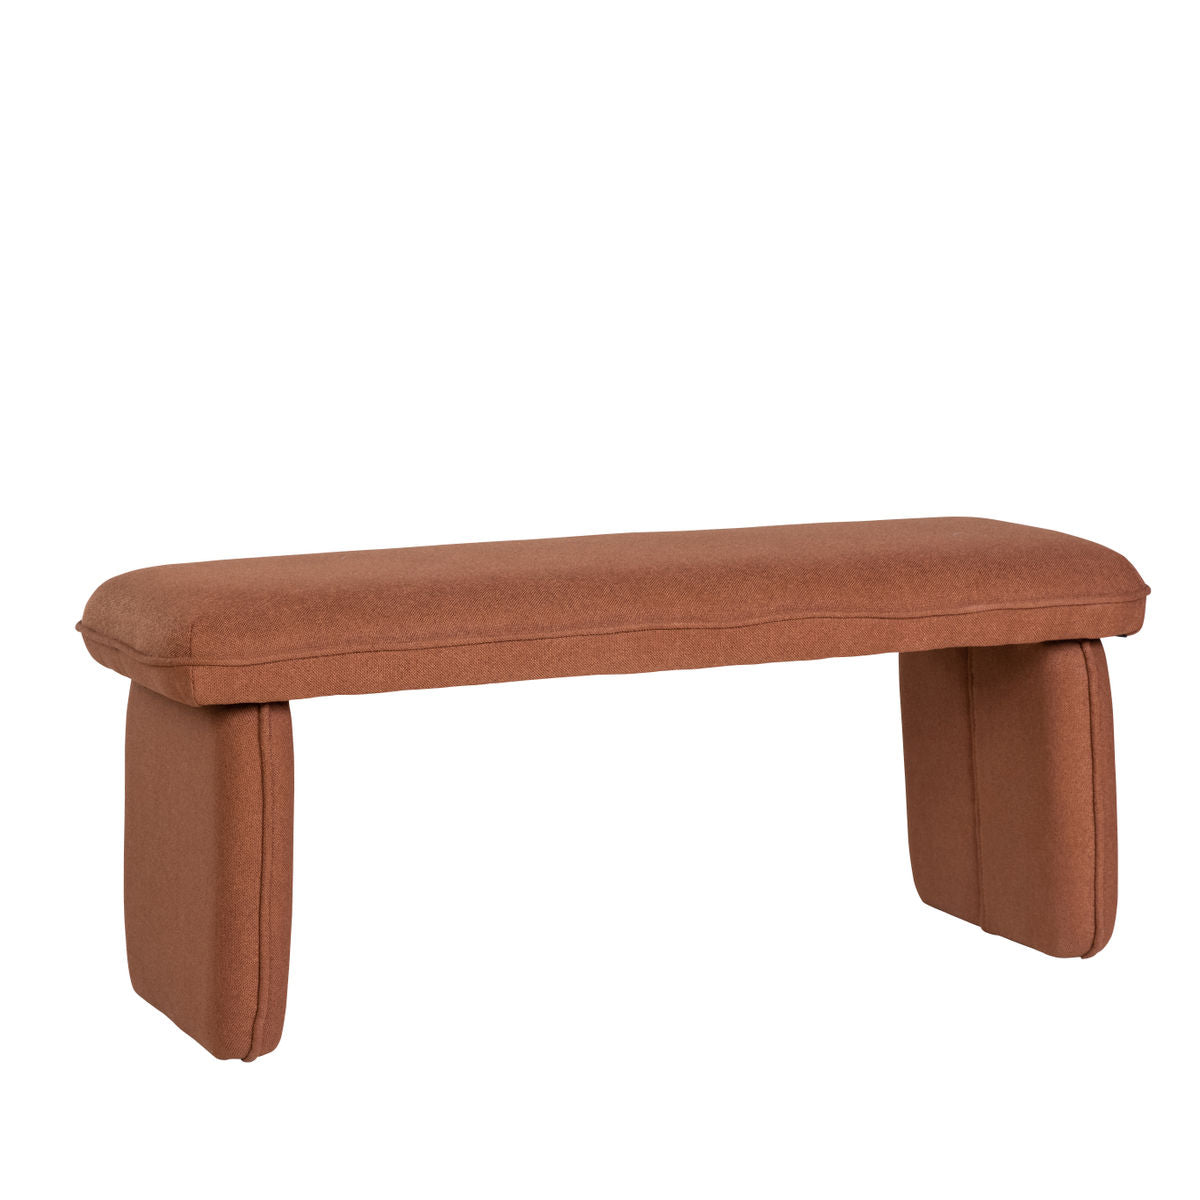 Hübsch Mellow bench reddish -brown